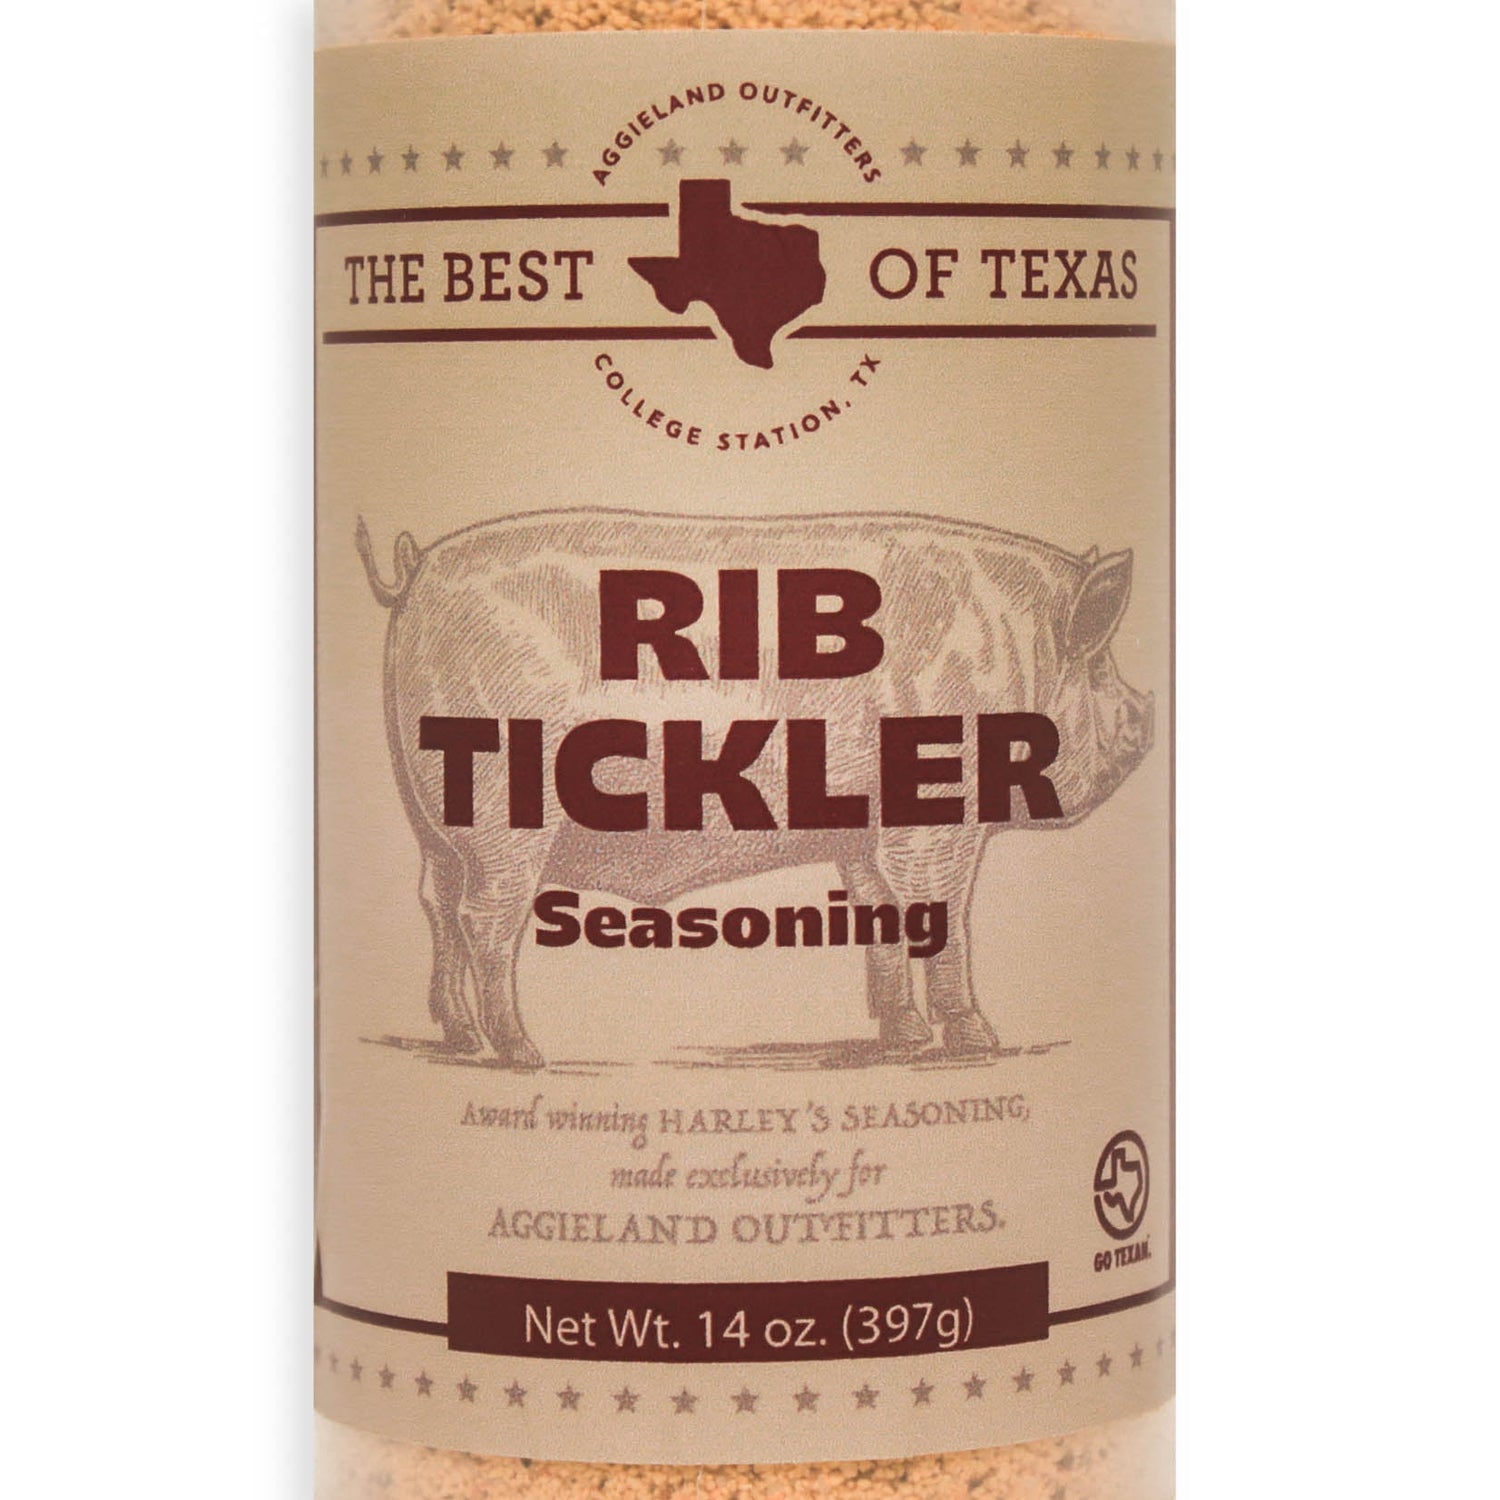 The Best Of Texas Harley's Rib Tickler Seasoning